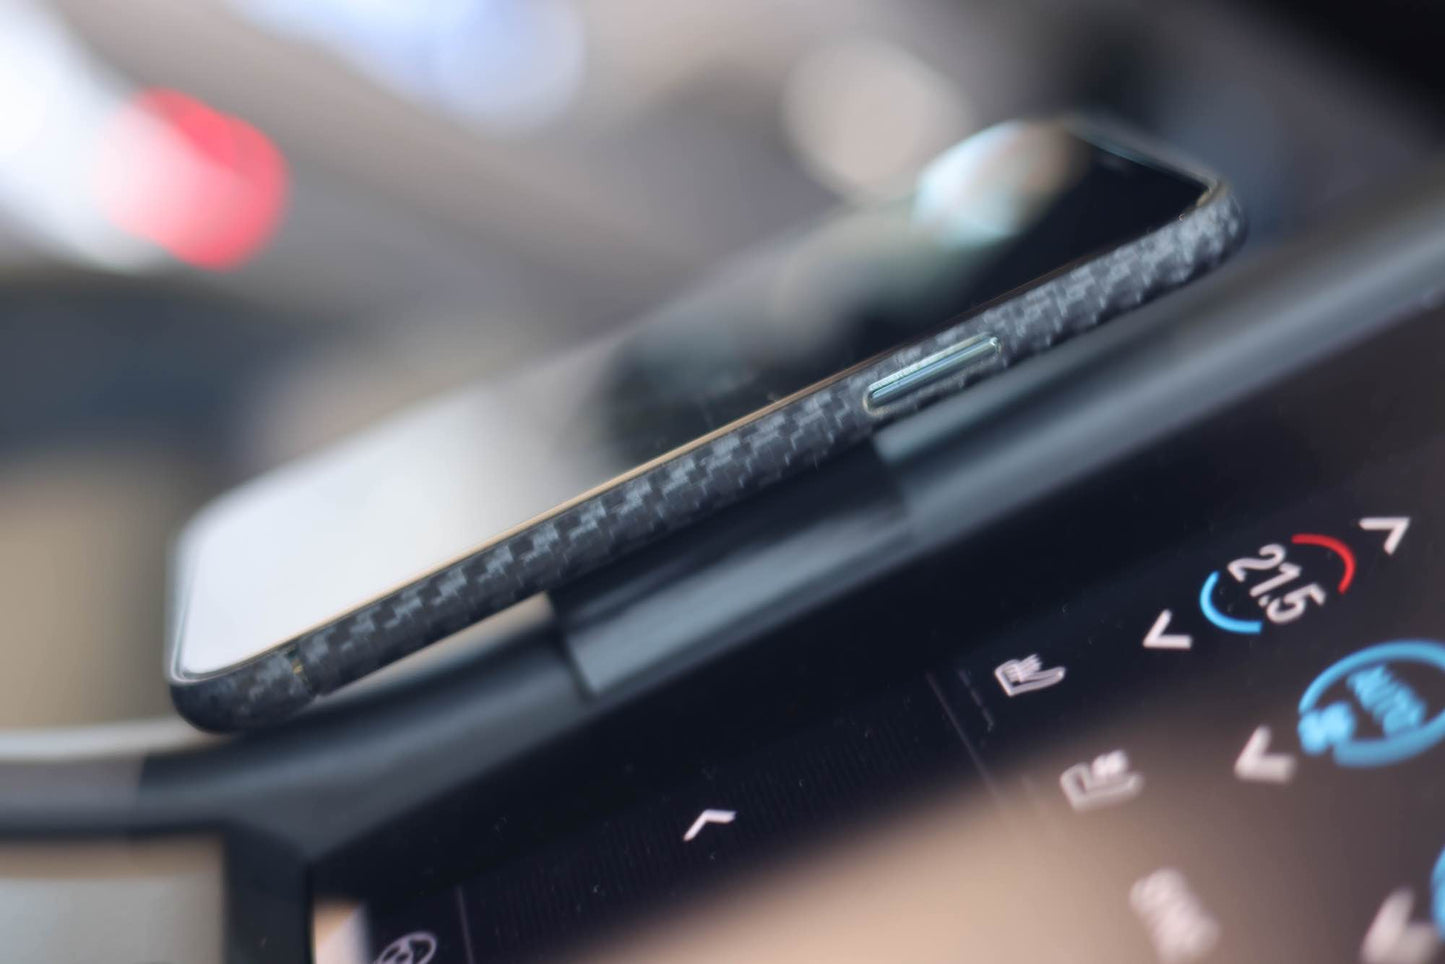 Porsche Taycan phone holder - 3D STL print file for download